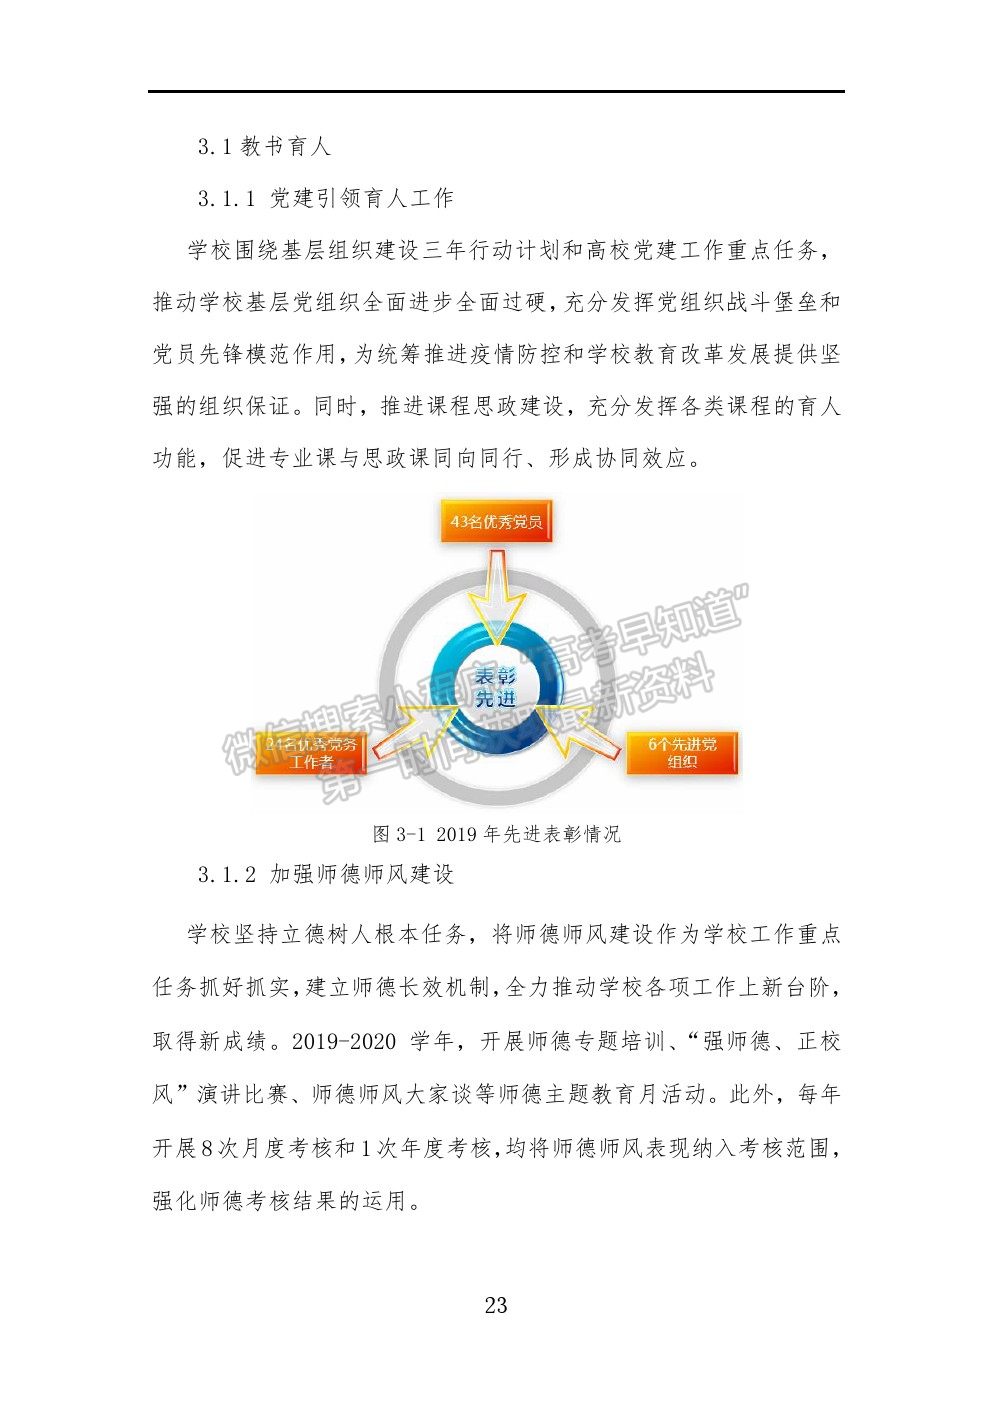 广州工程技术职业学院2021年就业质量报告